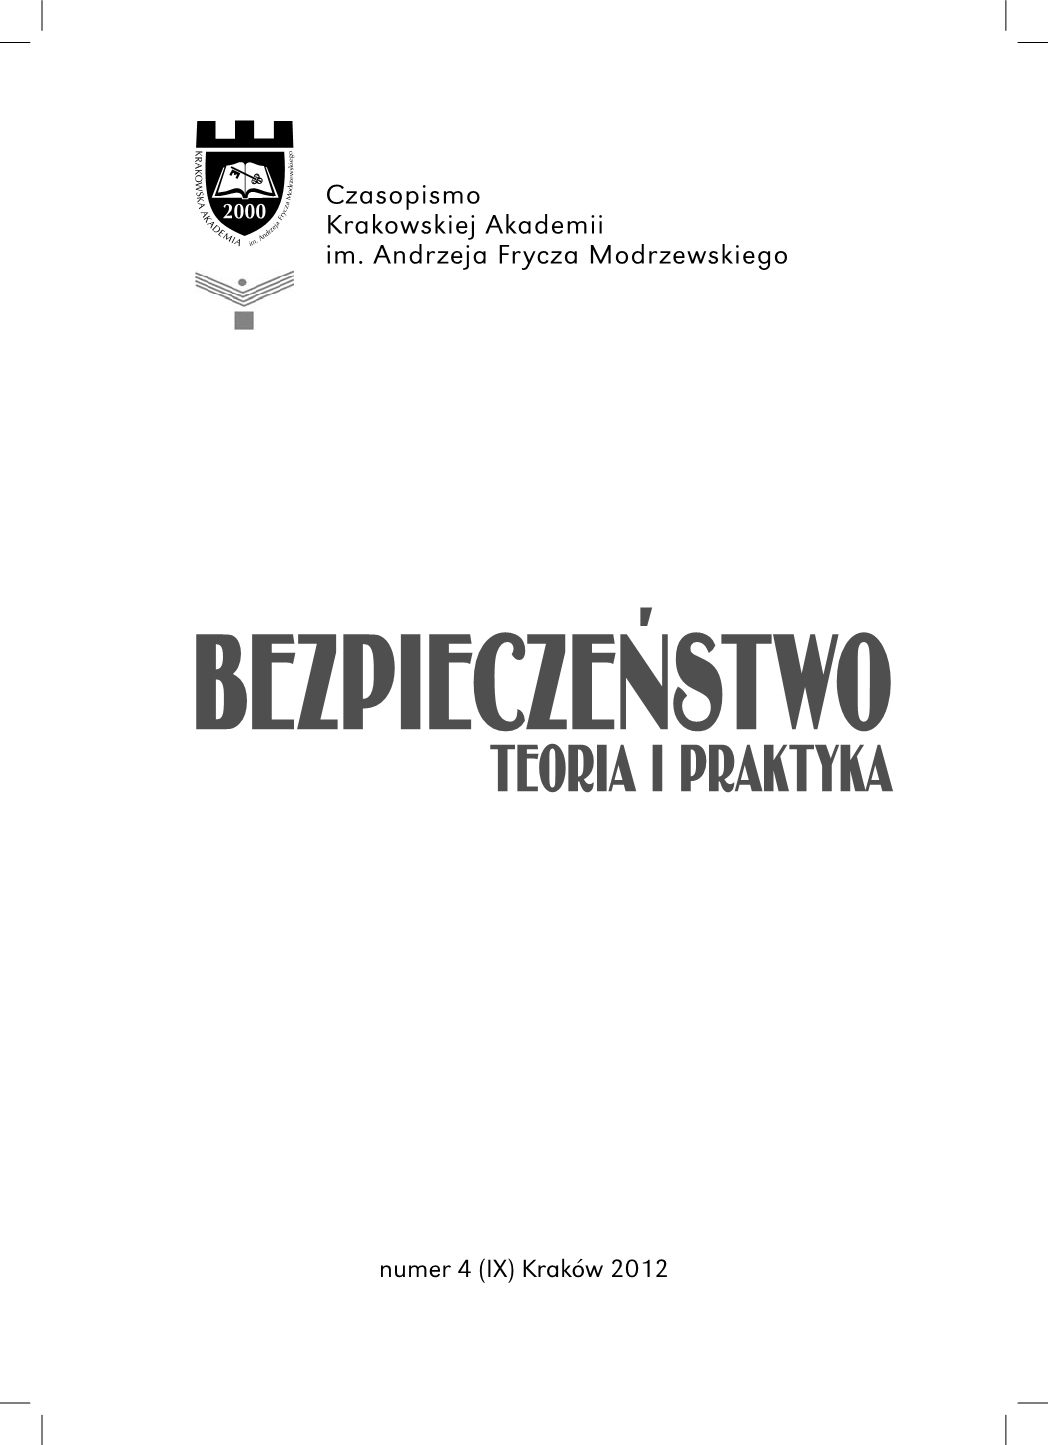 Violetta Kwiatkowska-Wójcikiewicz, Oględziny miejsca. Teoria i praktyka - book review Cover Image